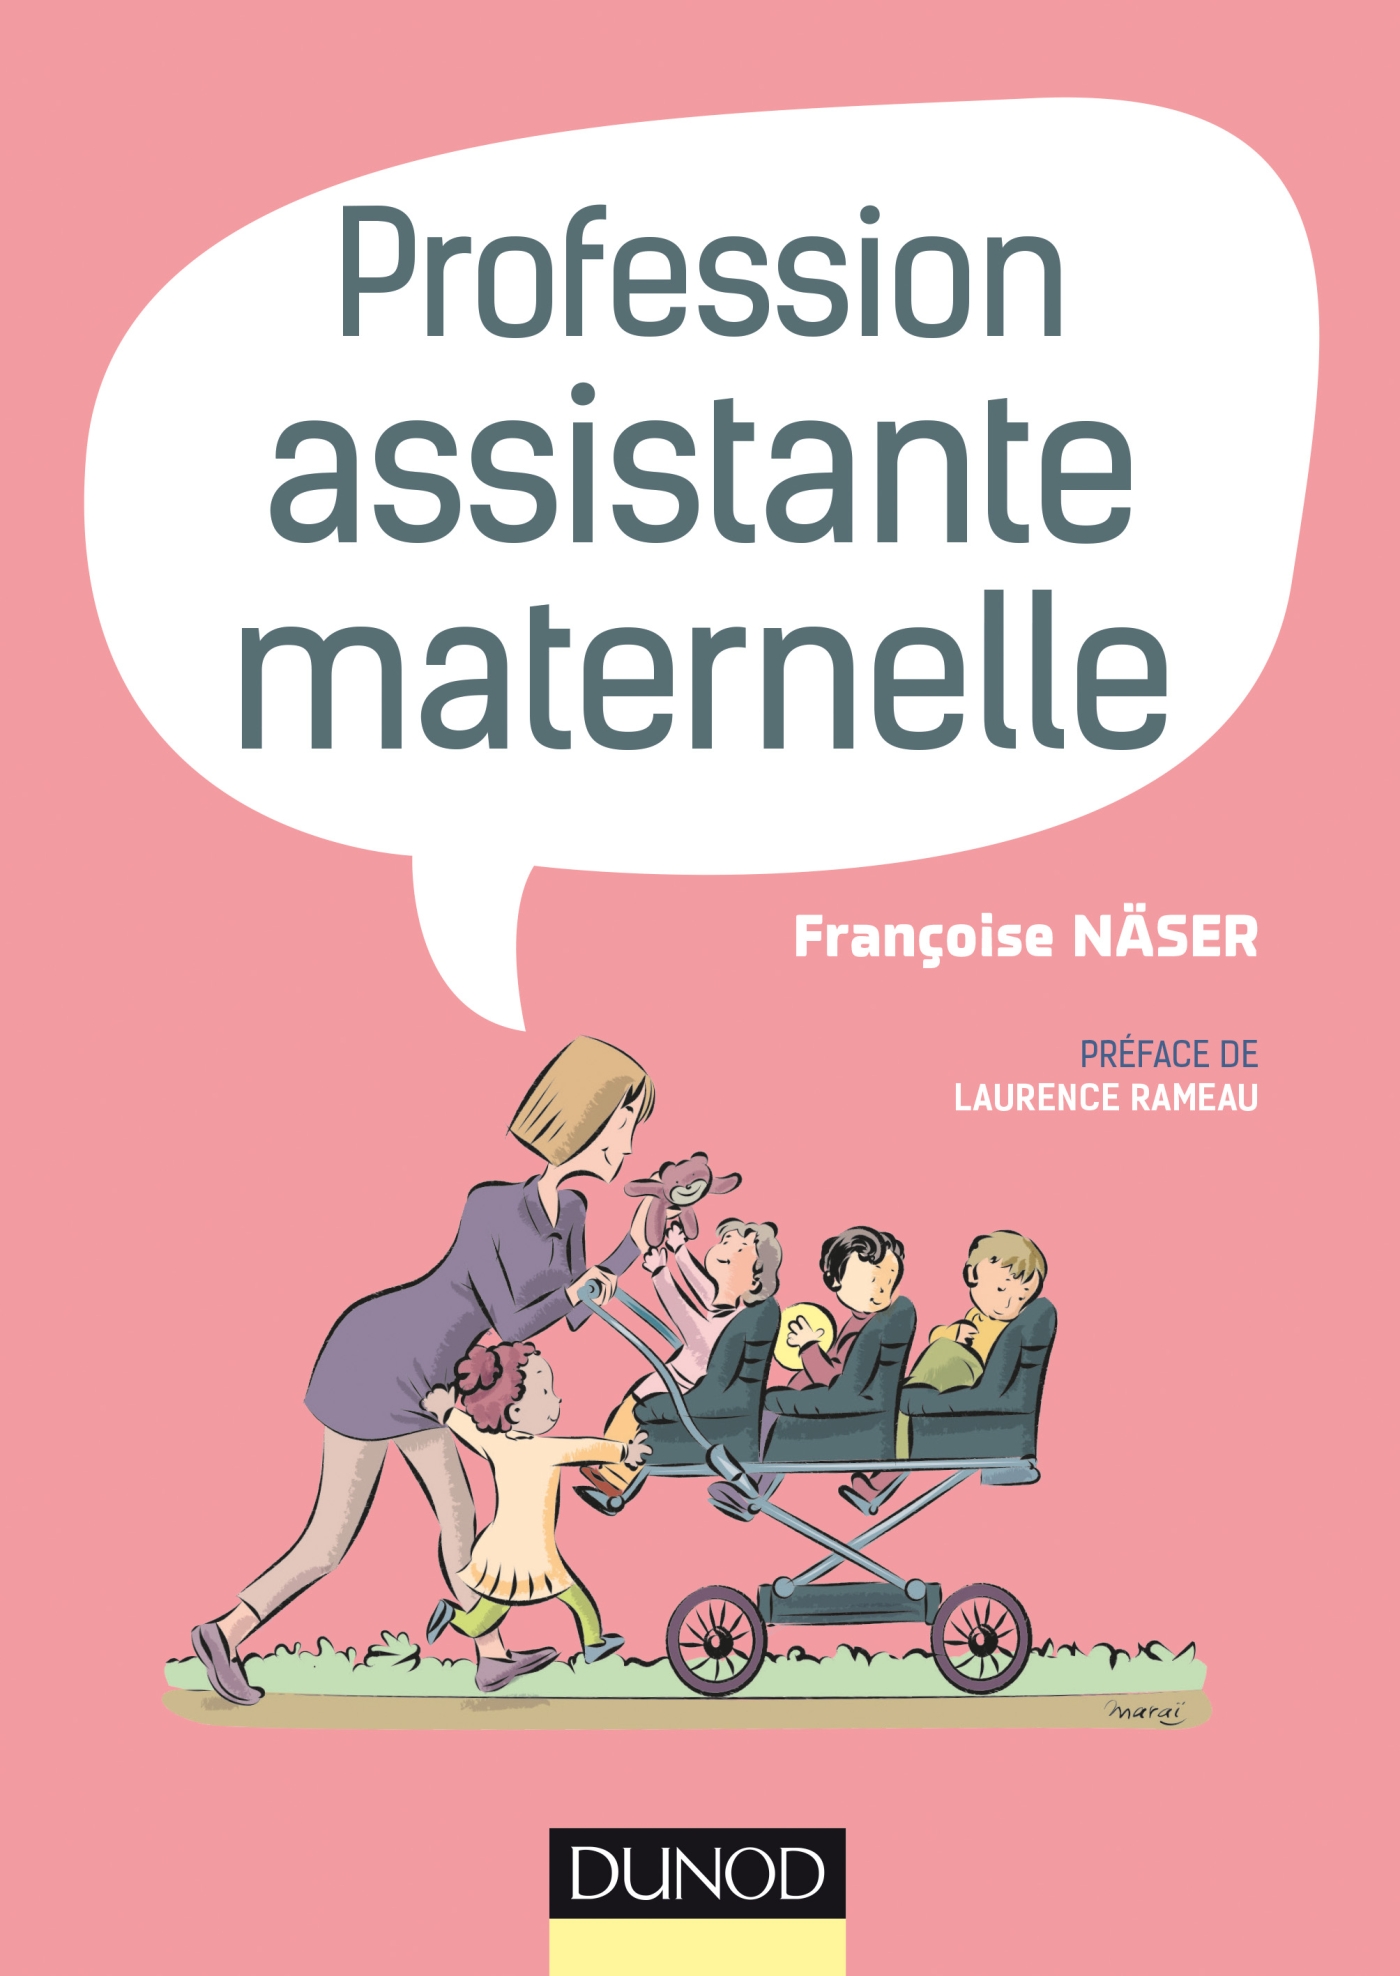 PUBLICITE] Passez à la - Assistantes Maternelles Magazine